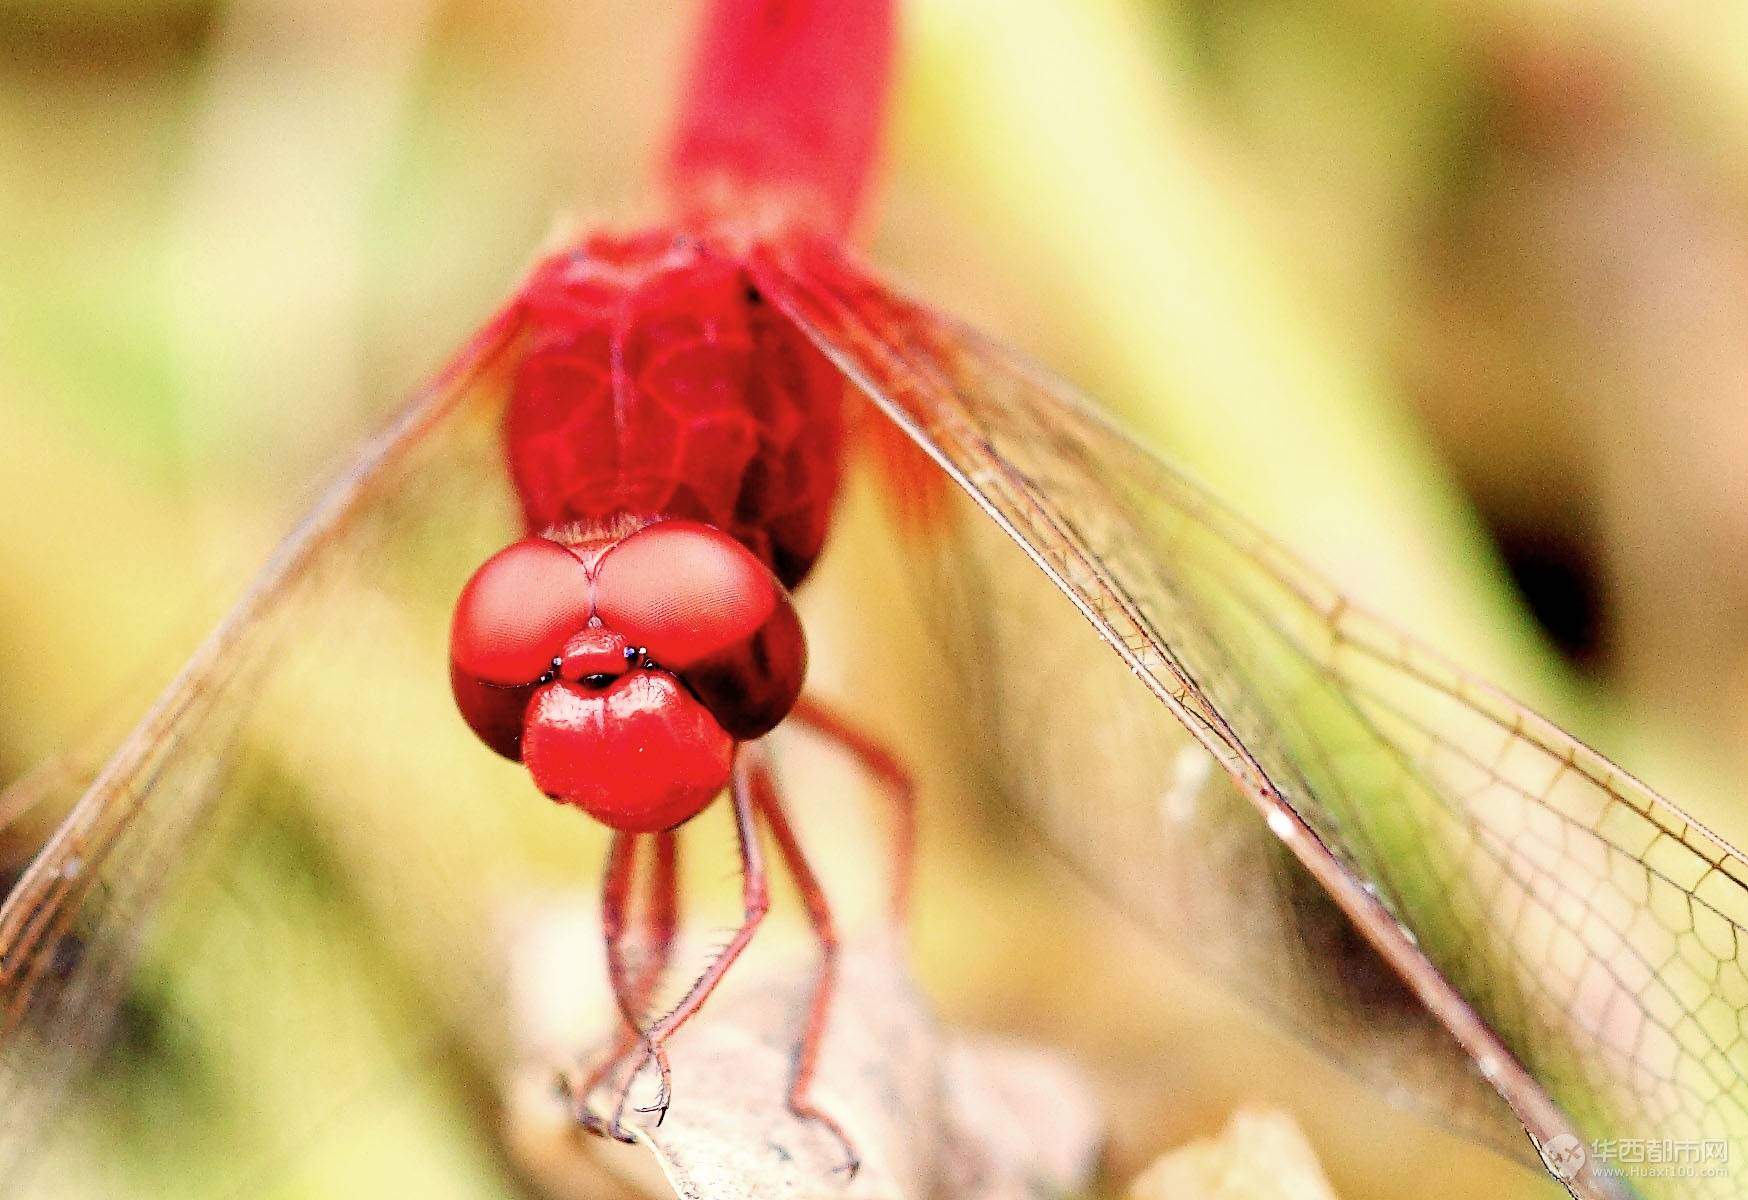 蜻蜓 红蜻蜓 微距摄影 - Pixabay上的免费照片 - Pixabay